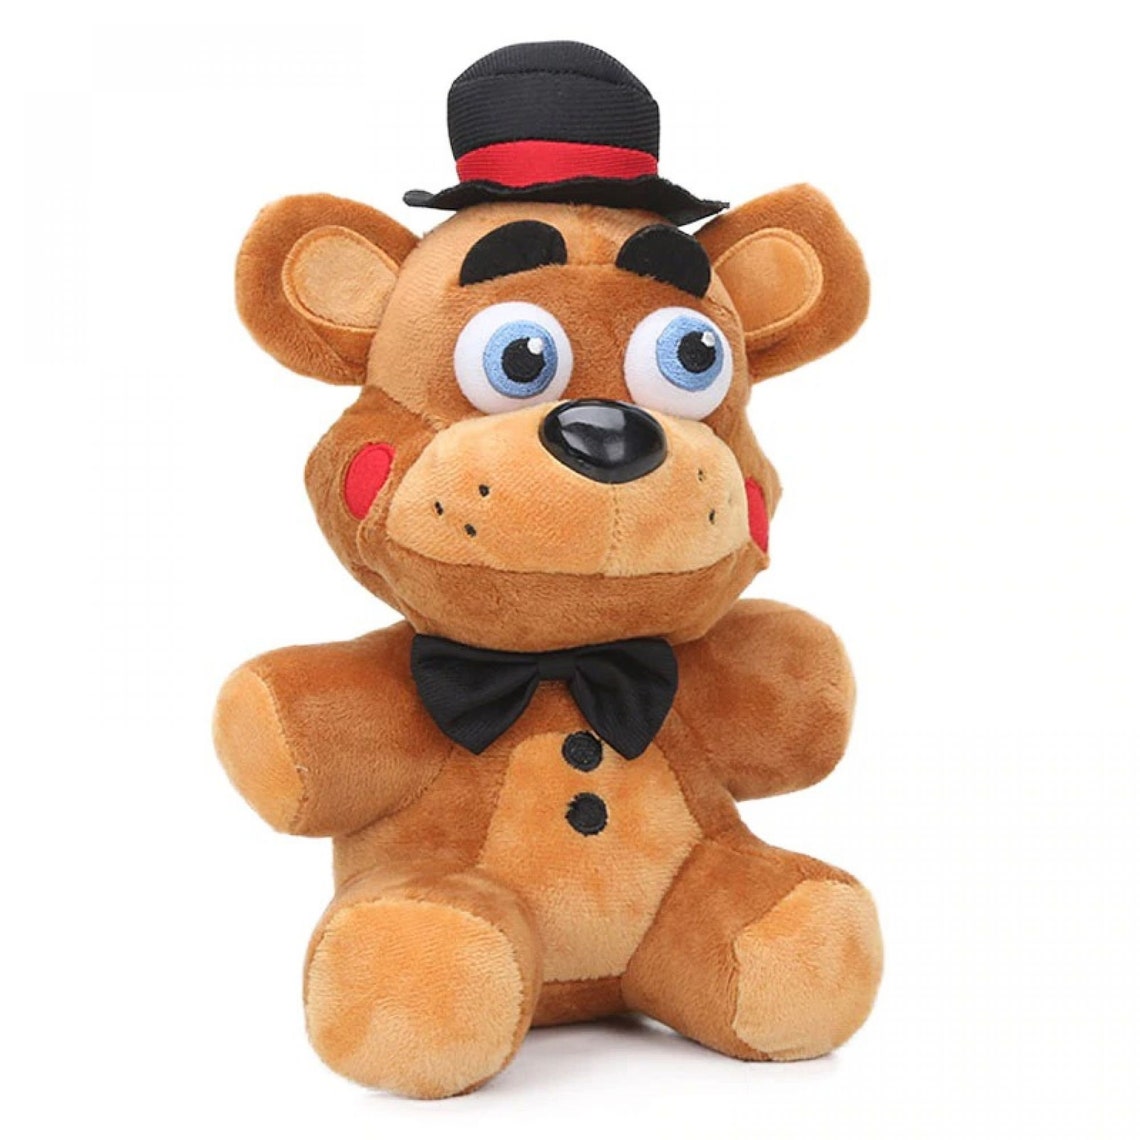 Five Nights At Freddys 25cm Plush Toy Fnaf Stuffed Animal Etsy